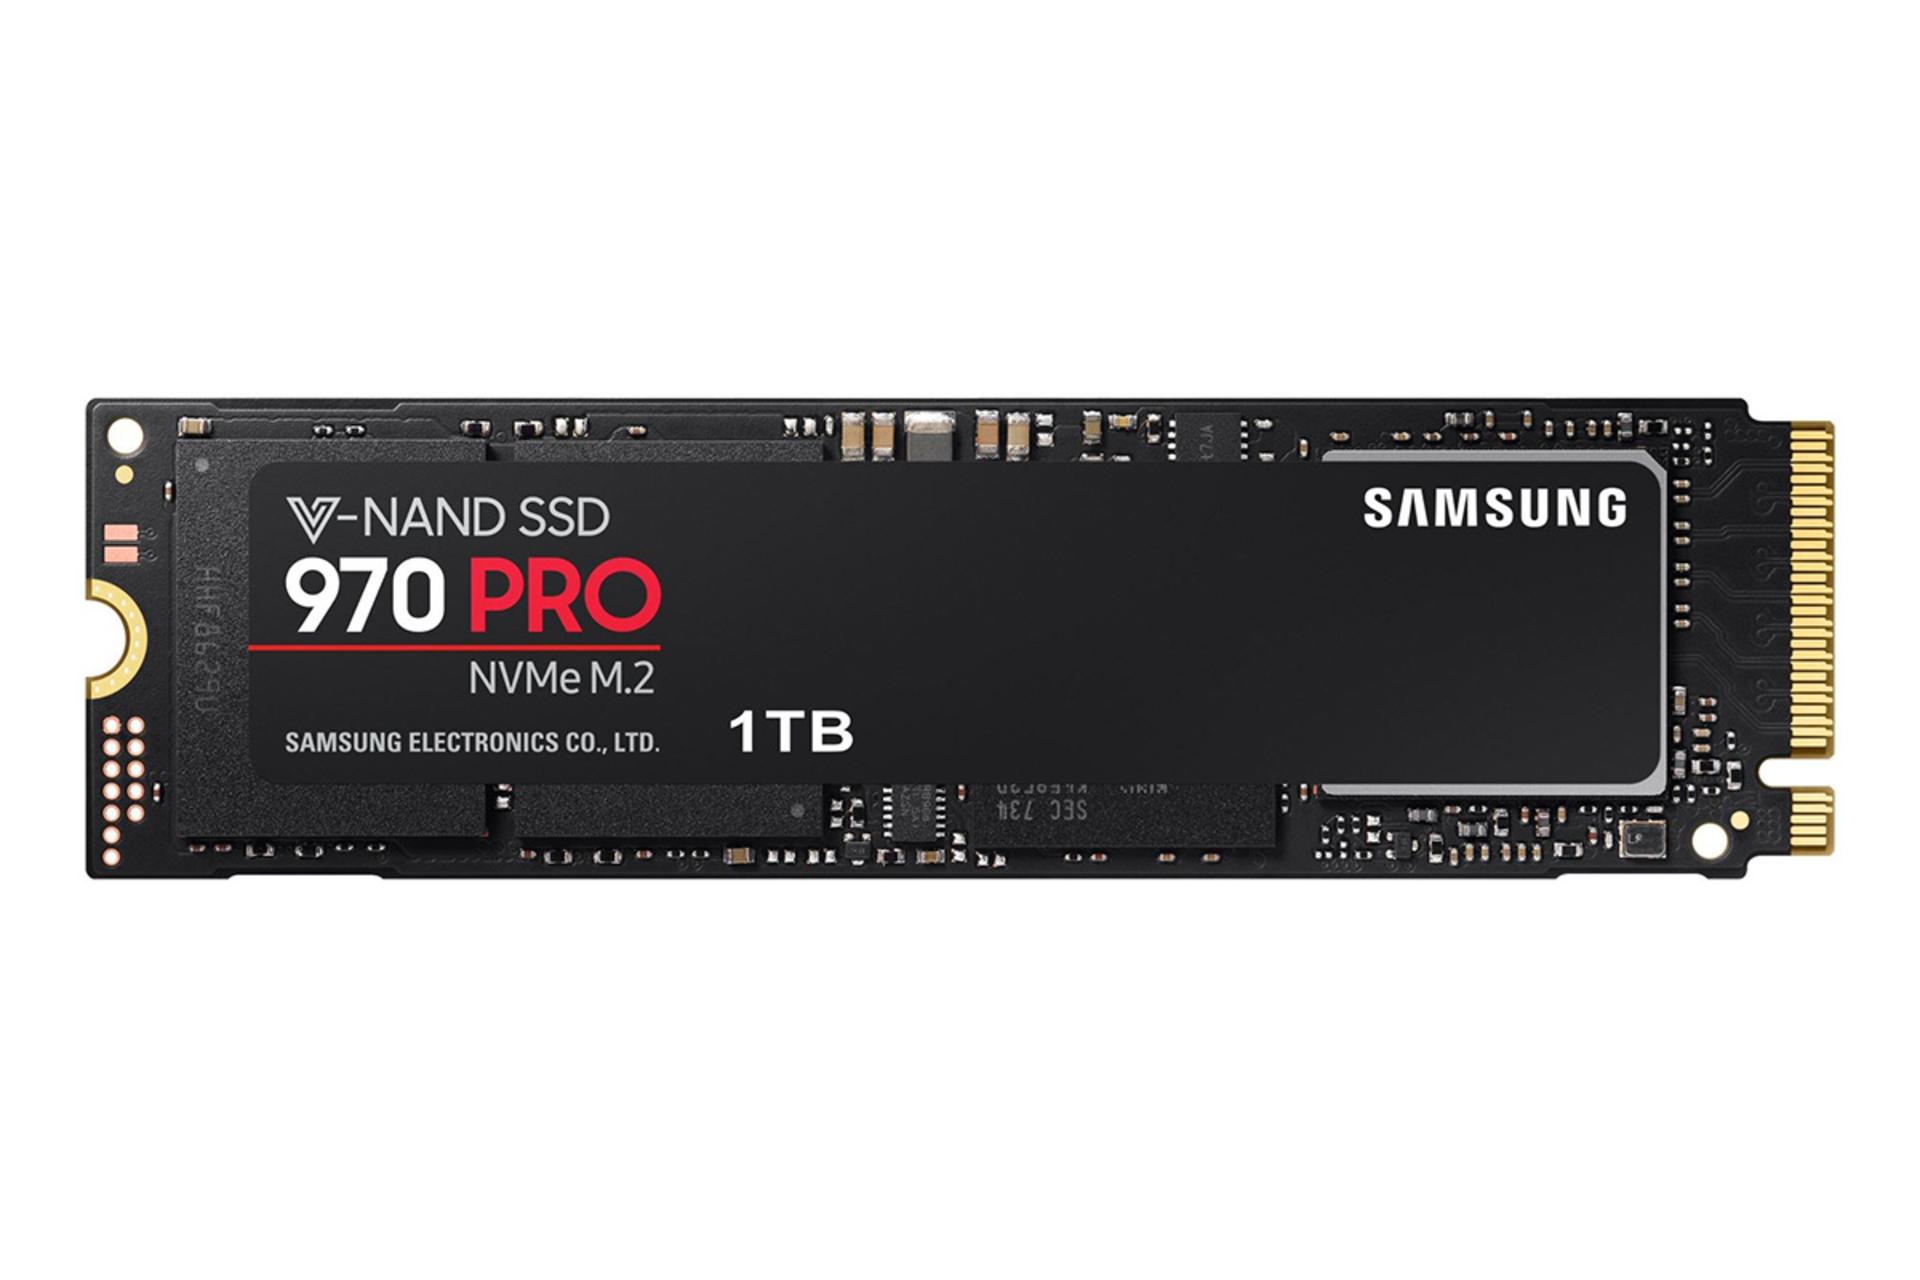 مرجع متخصصين ايران Samsung 970 Pro 1TB / سامسونگ ۹۷۰ پرو ۱ ترابايت